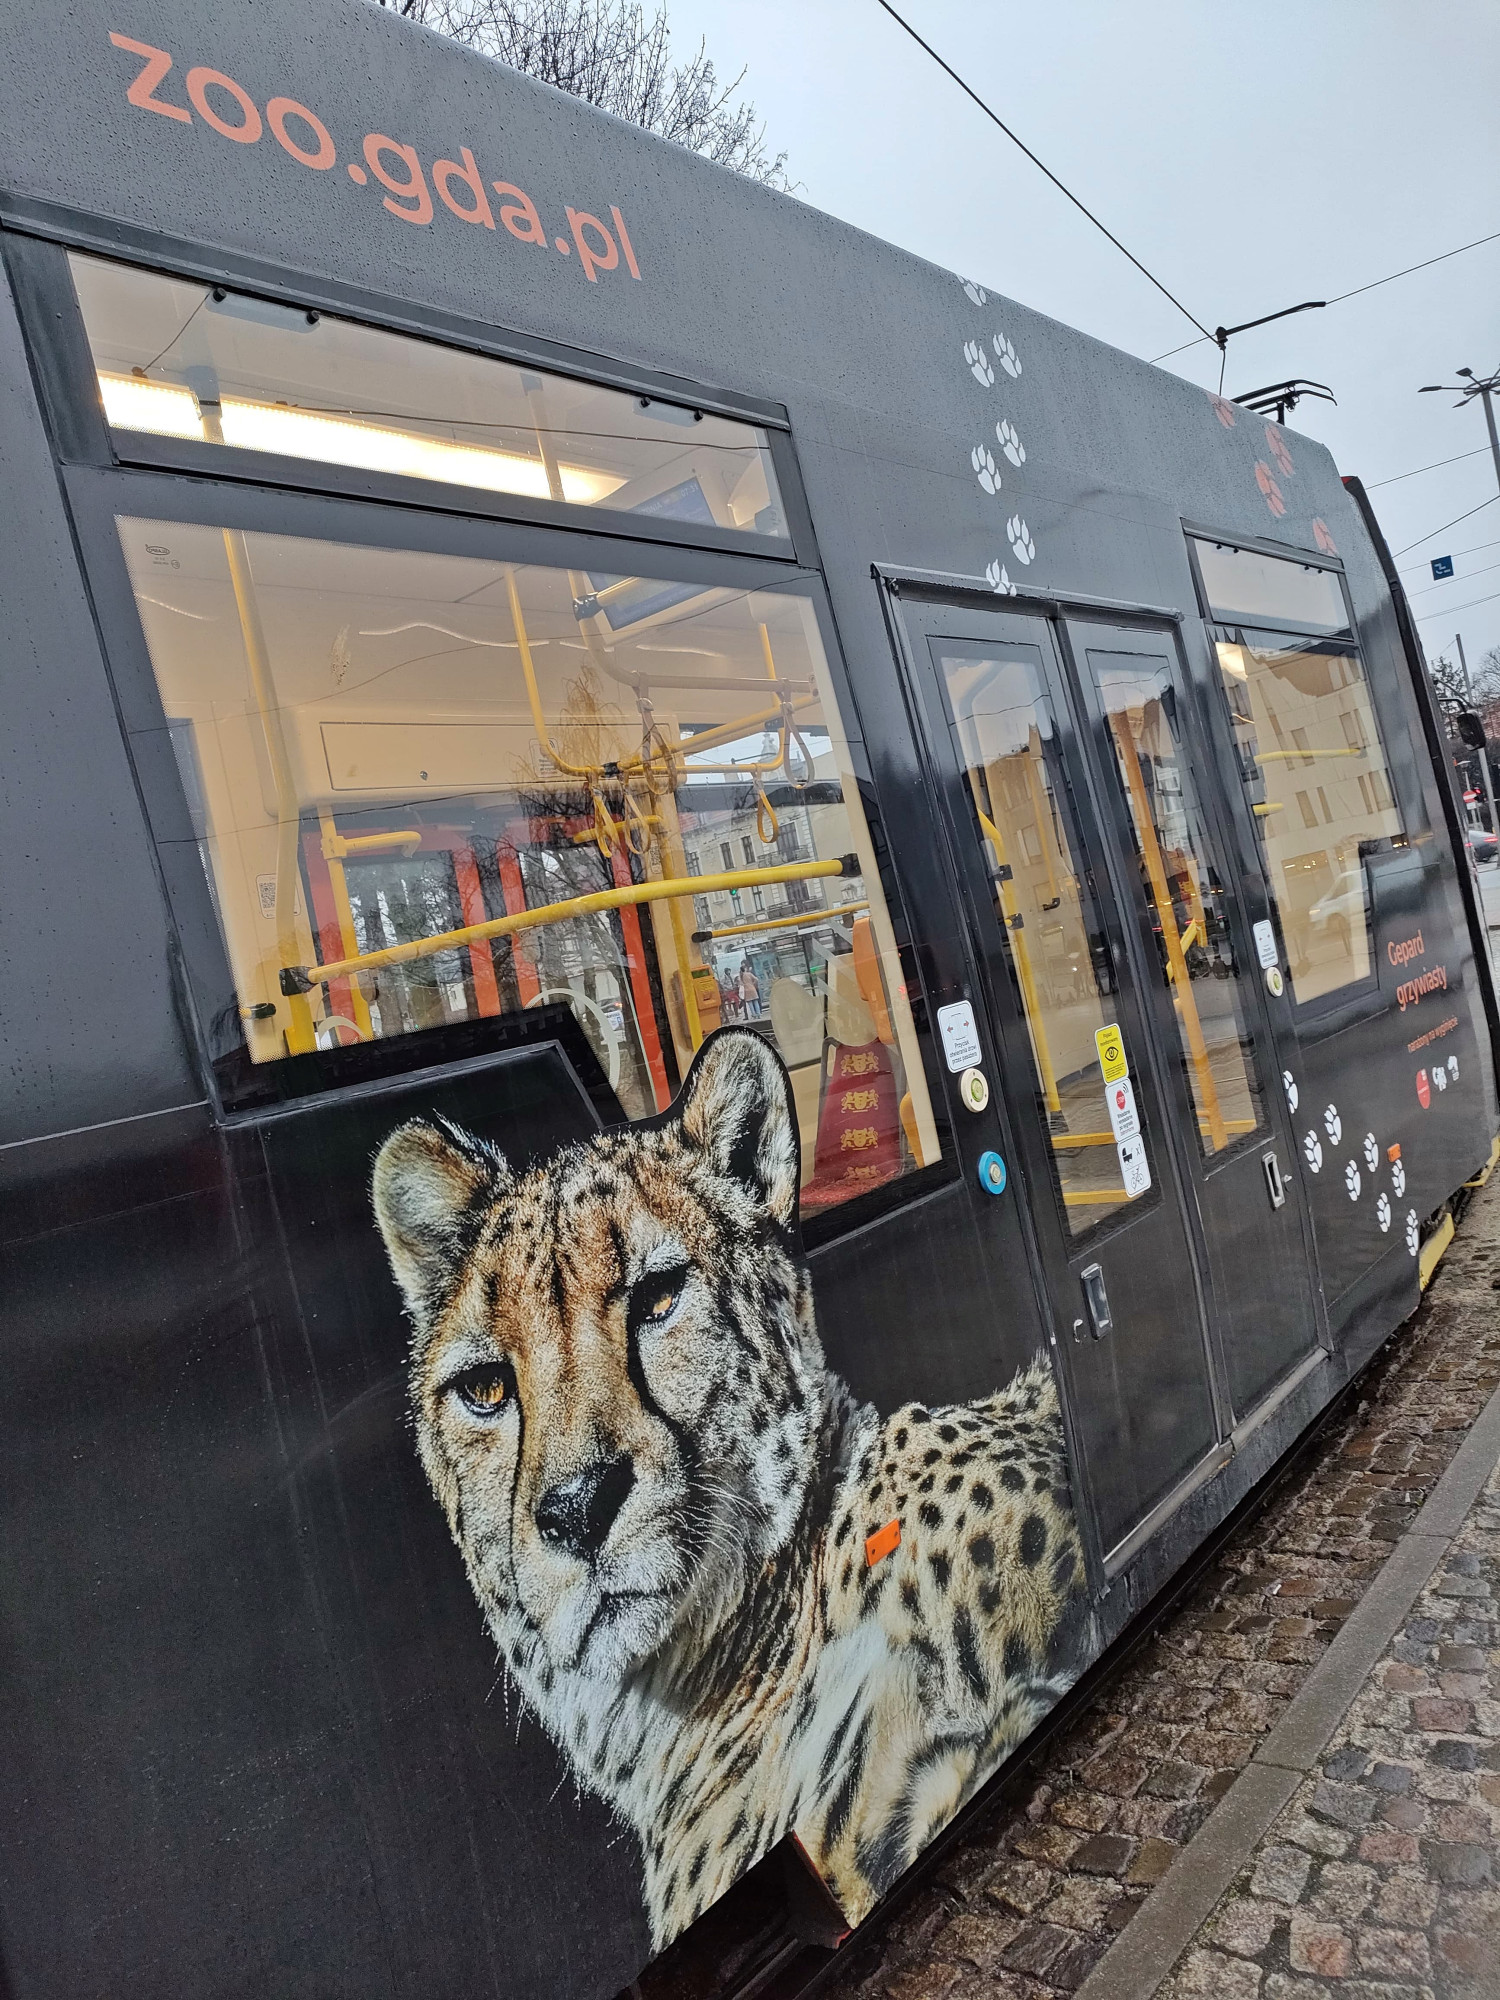 Zdjęcie geparda wyklejone na tramwaju. Fot. gdansk.pl